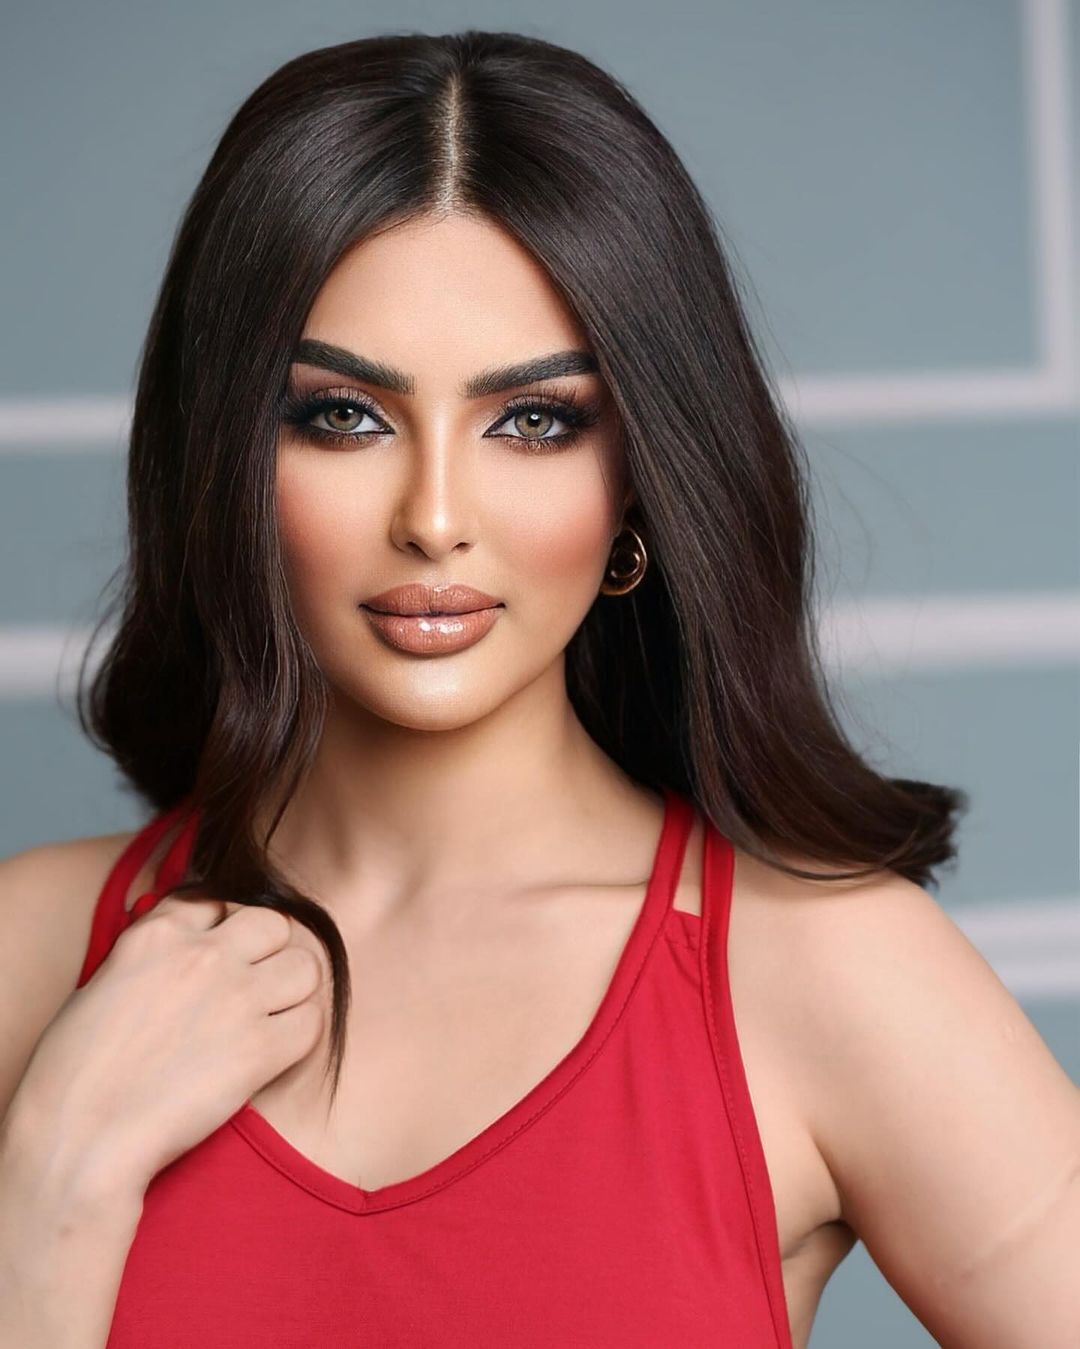 Организаторы "Мисс Вселенная" опровергли участие Саудовской Аравии в конкурсе и обвинили 27-летнюю модель во лжи